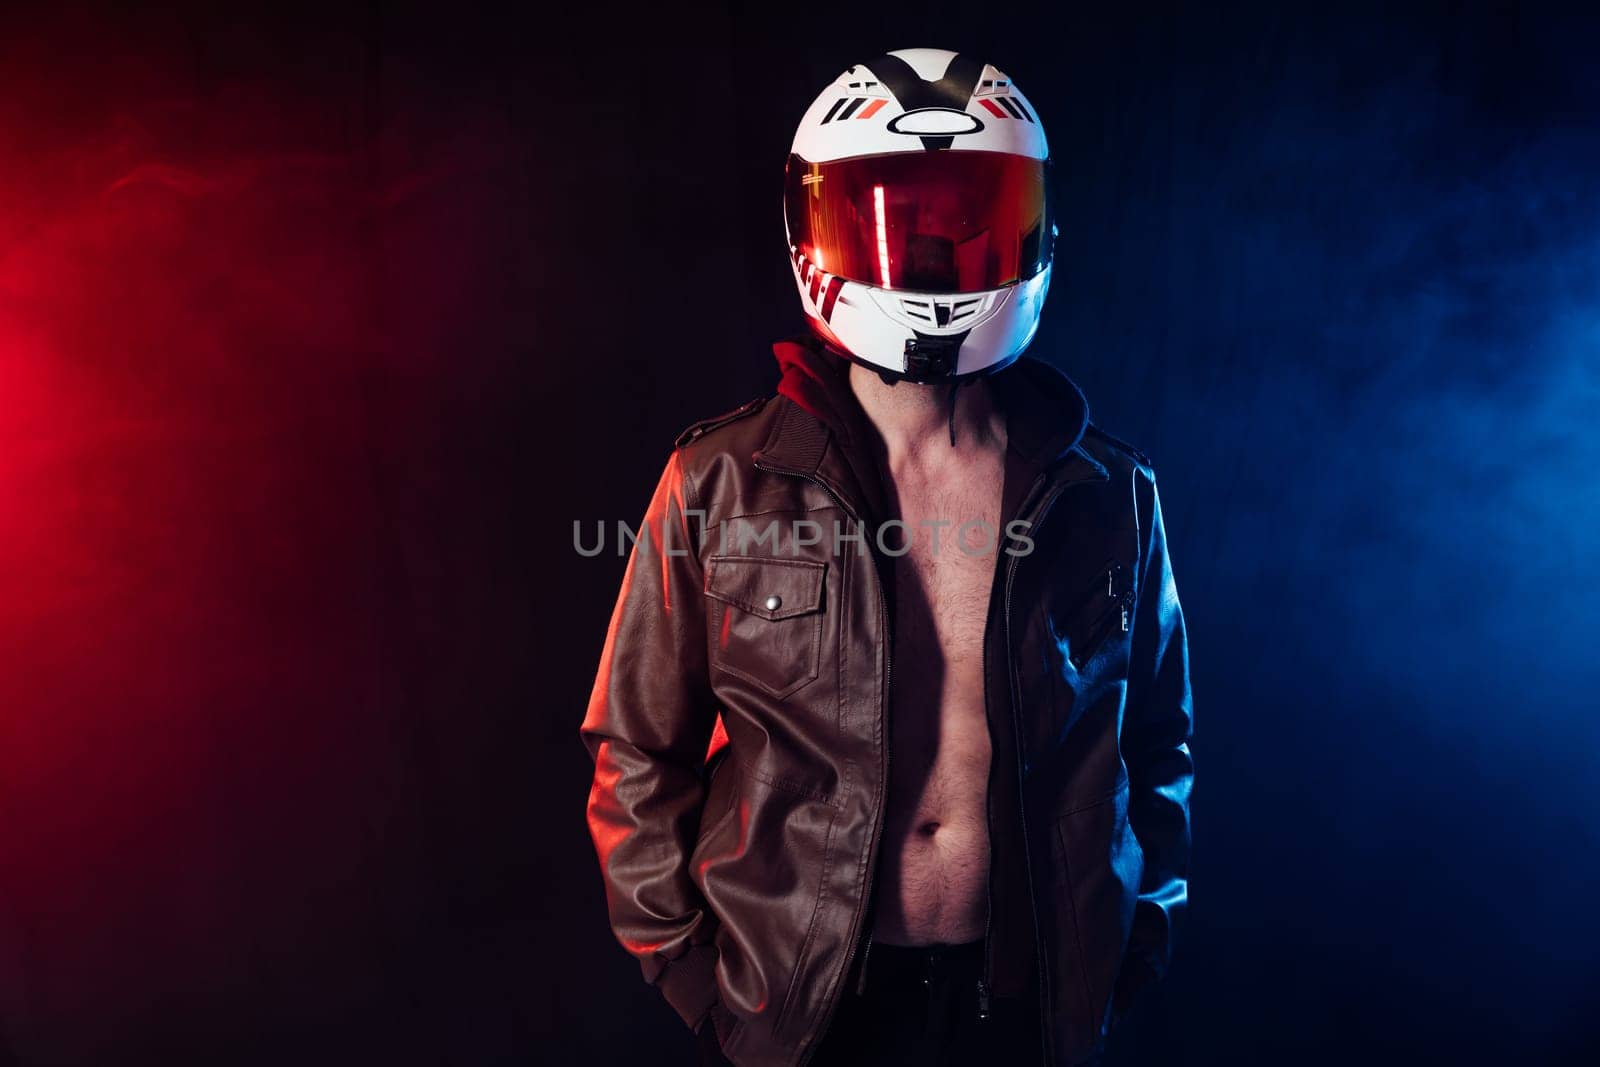 biker in motorcyclist helmet on dark